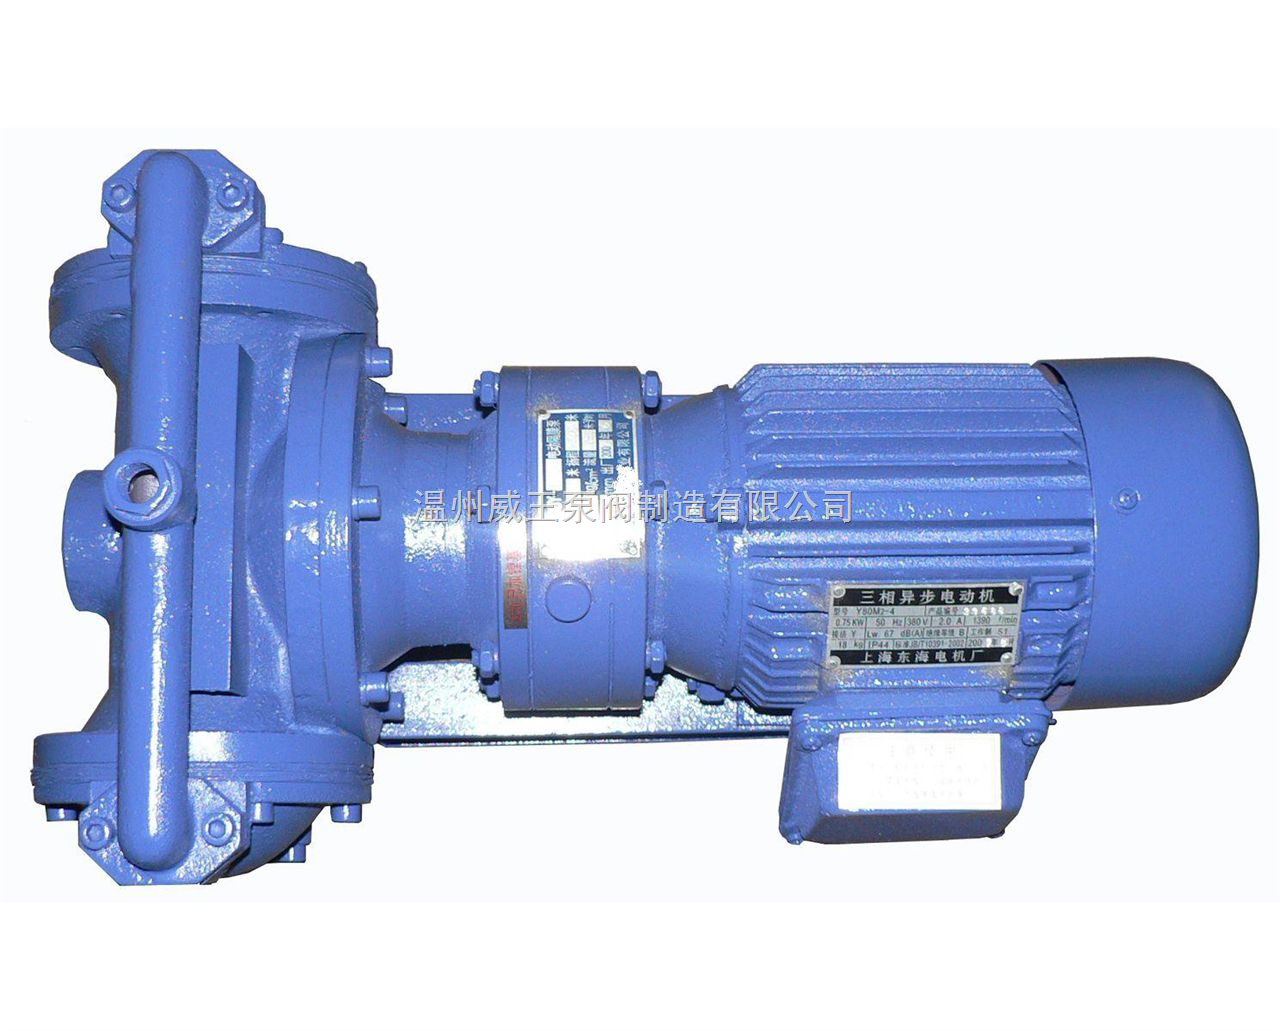 隔膜泵,隔膜泵规格型号,隔膜泵结构图片-中国泵